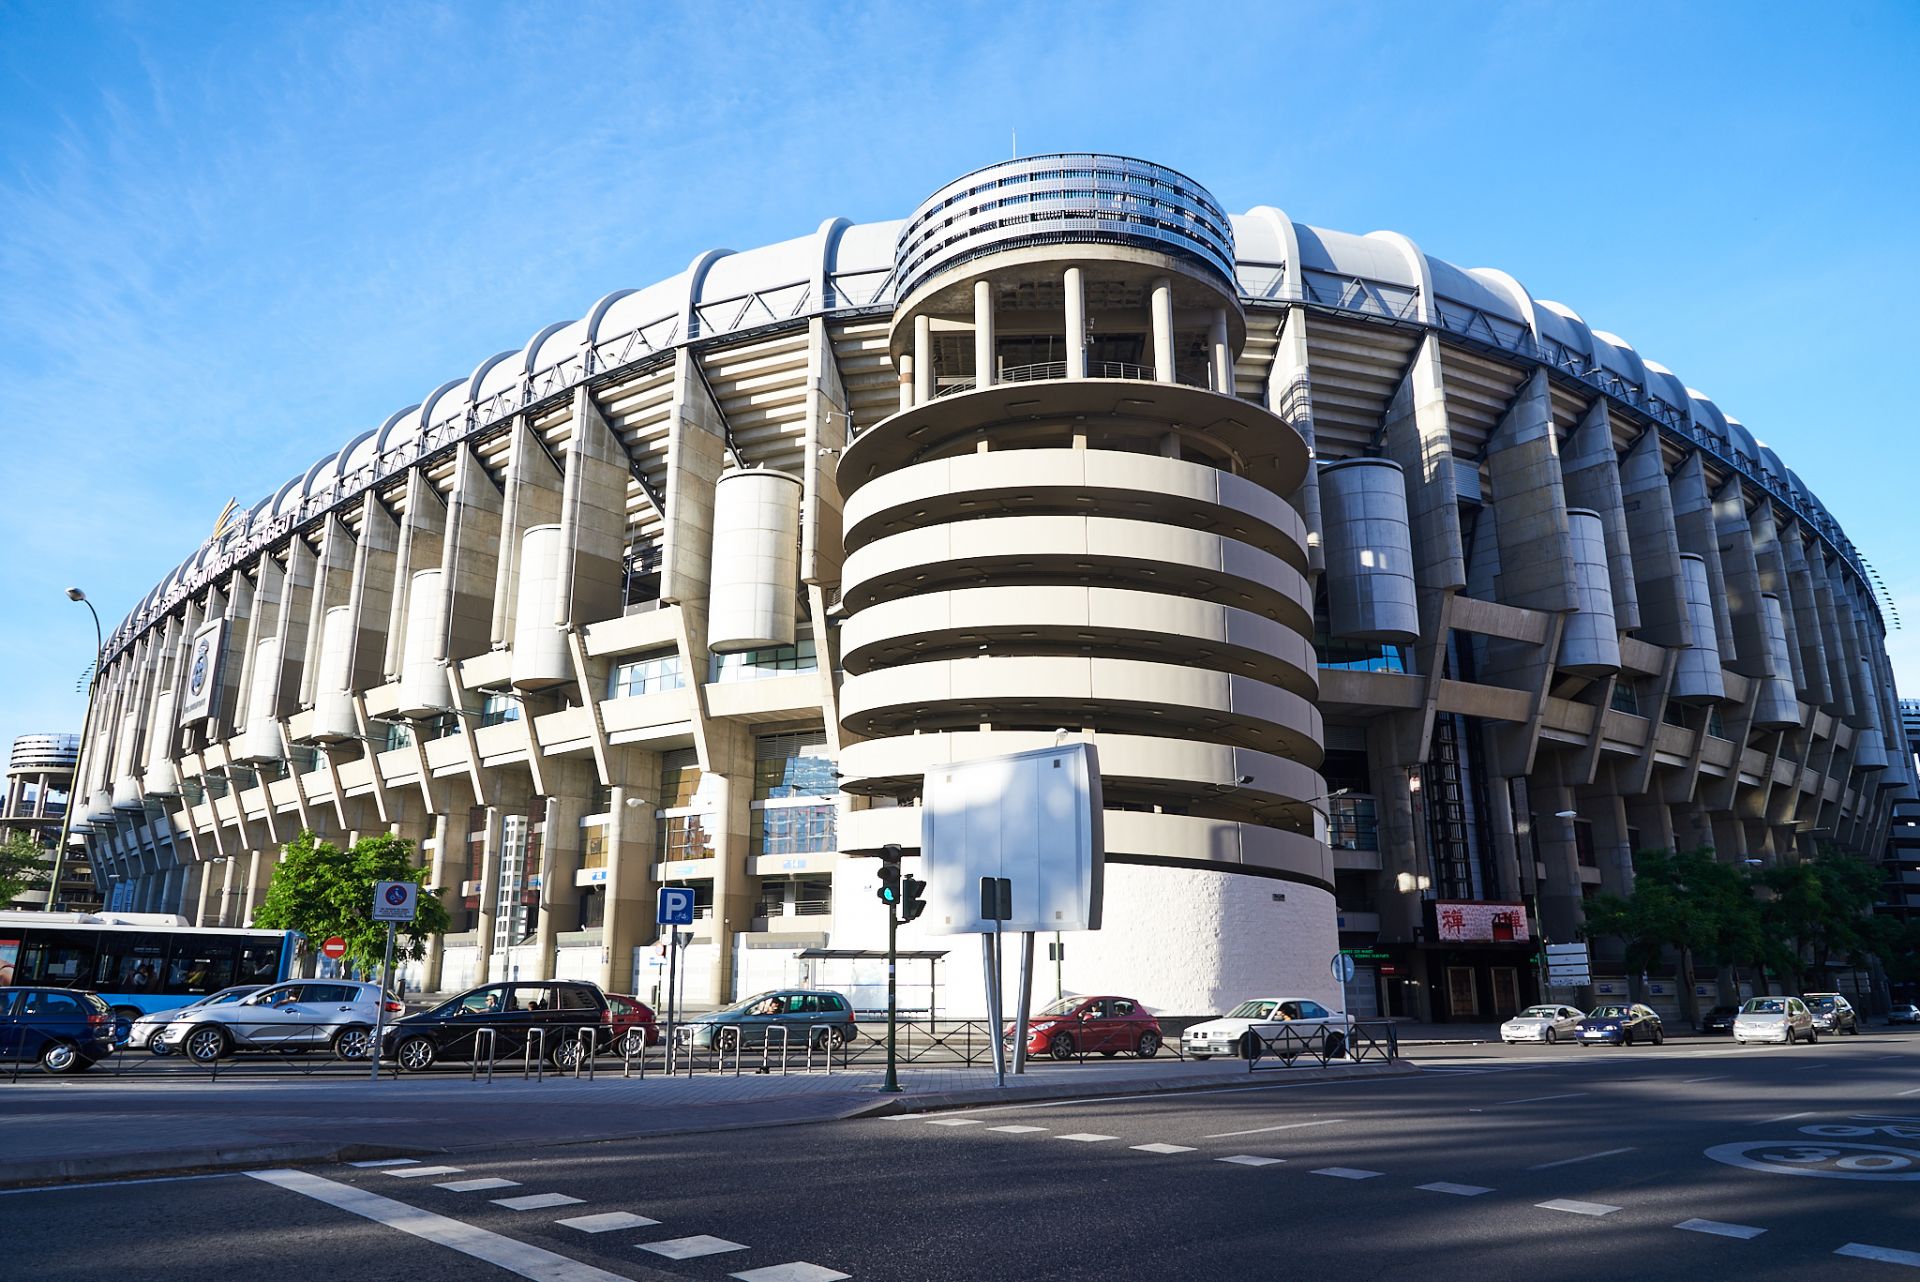 Sân vận động Santiago Bernabeu năm 2016, trước khi được đại tu vào năm 2020.